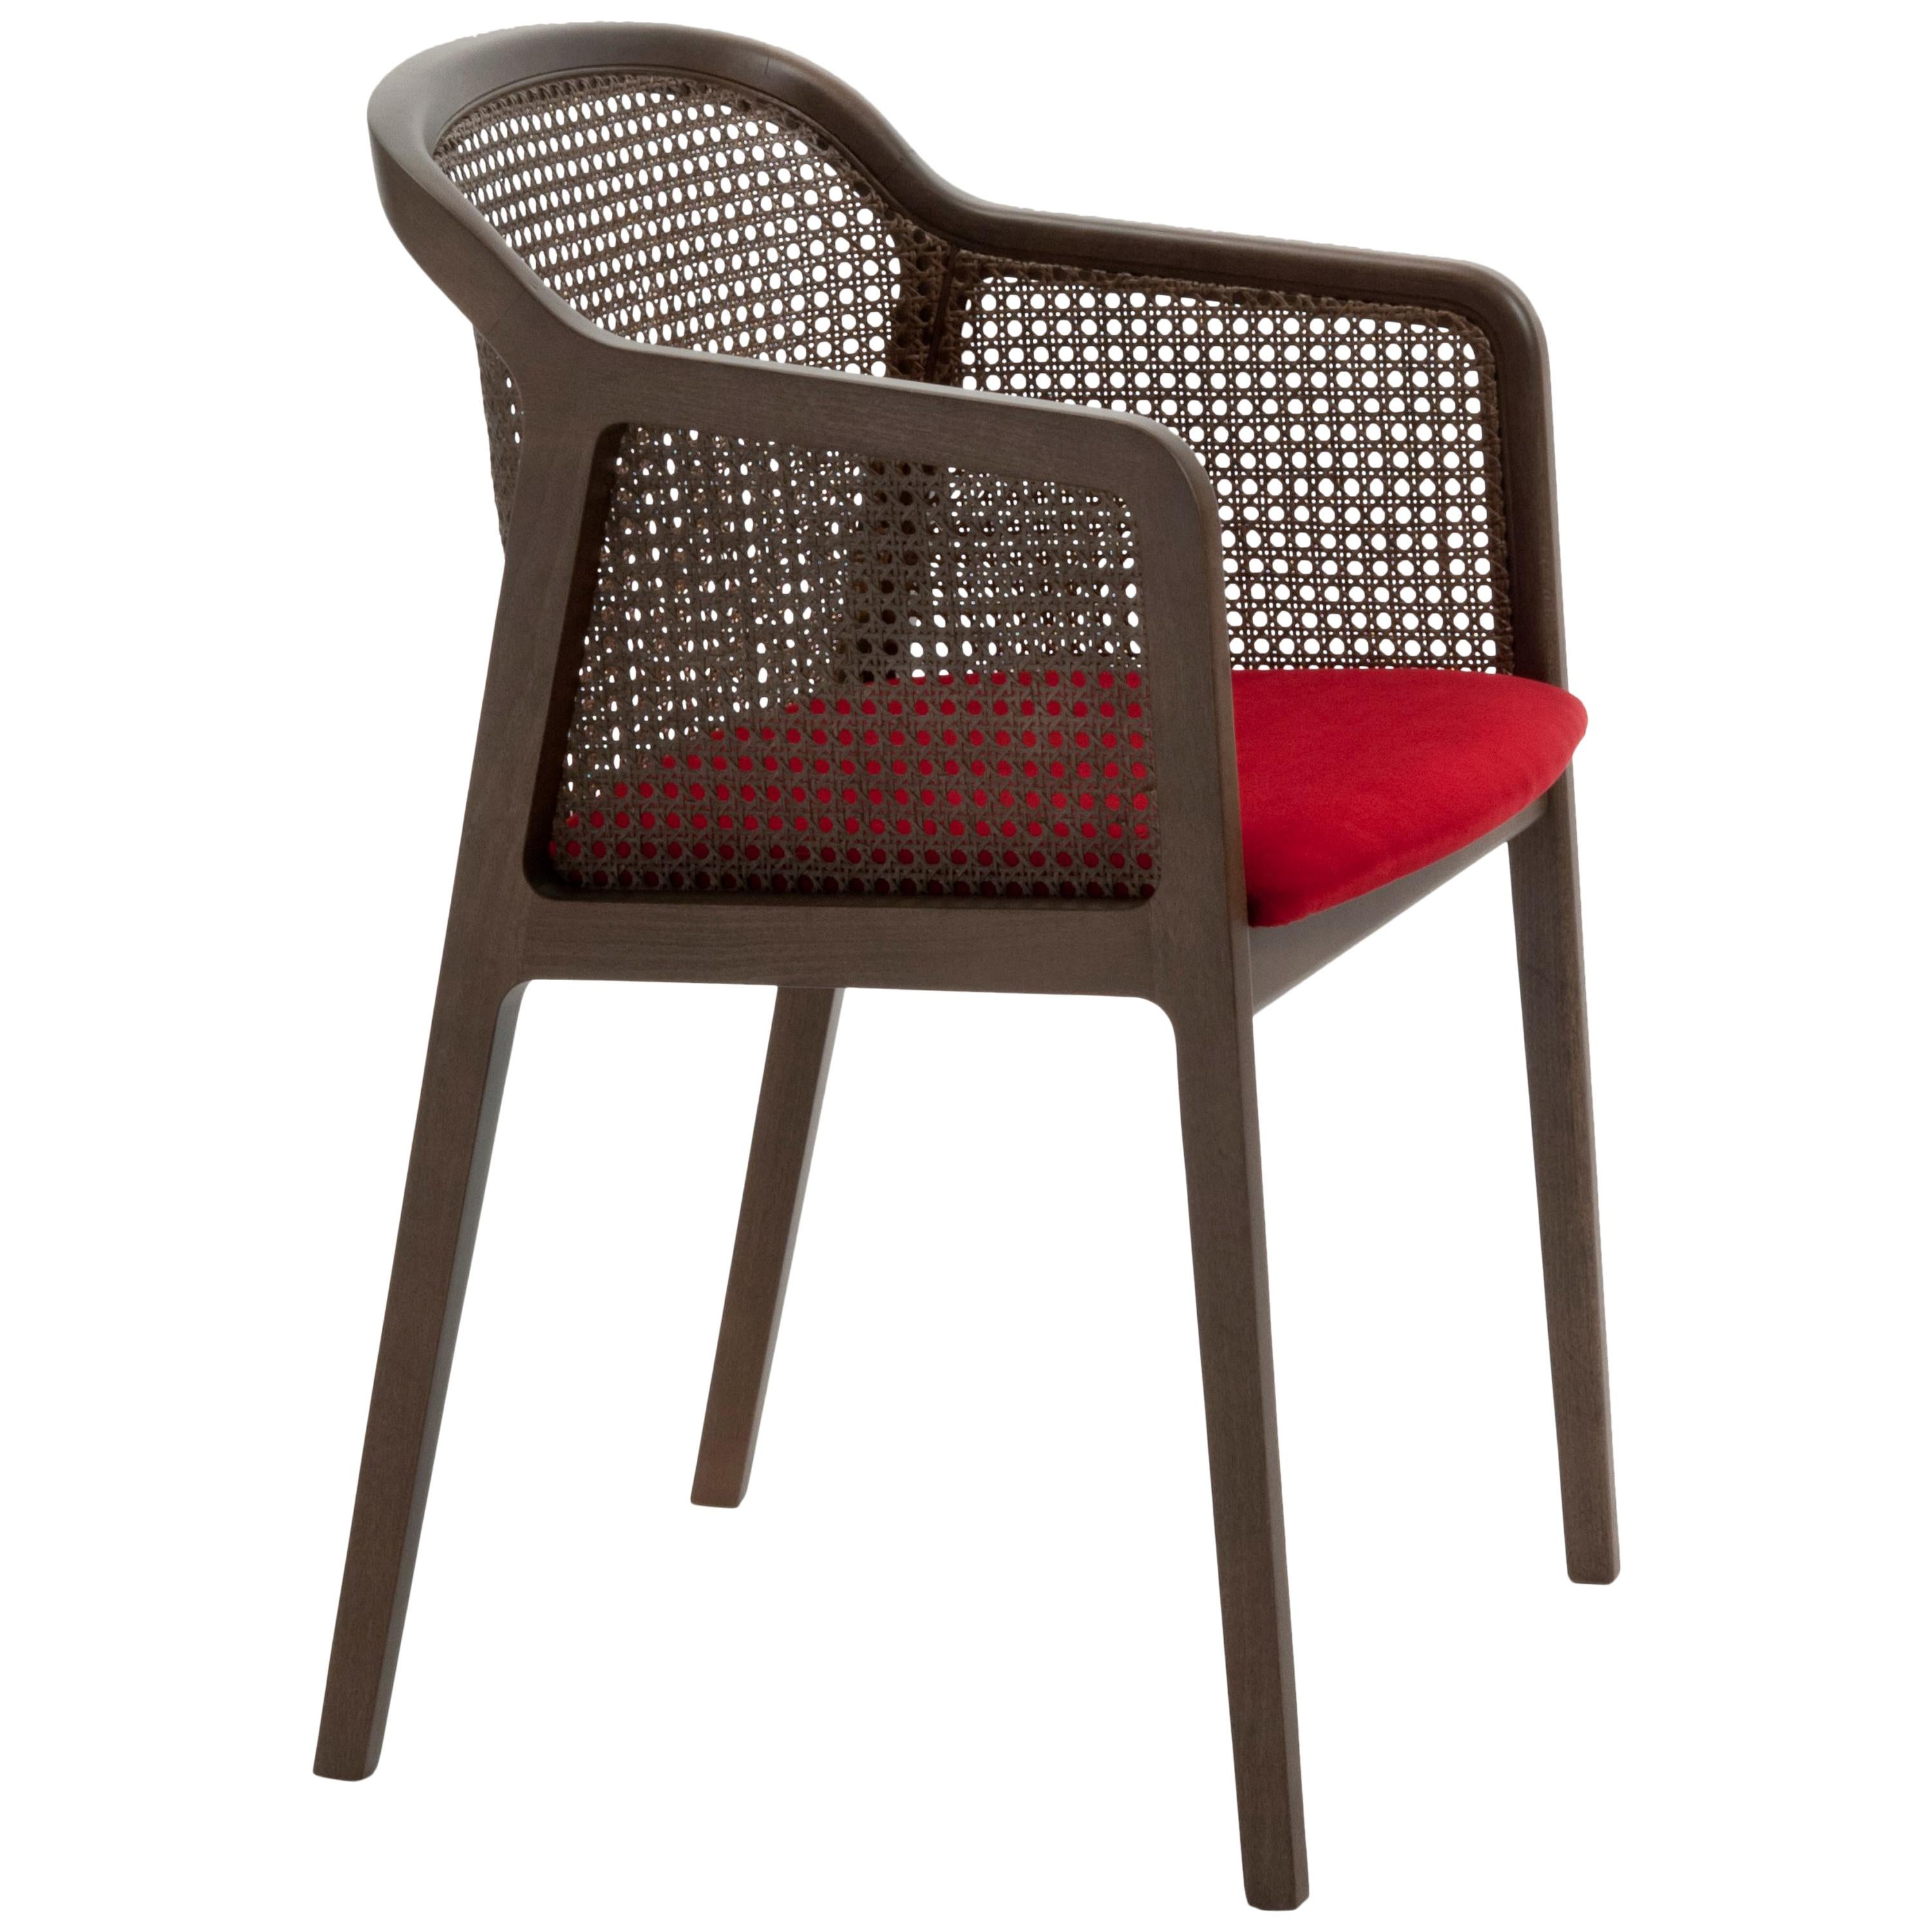 Wien, Zeitgenössischer Sessel von Col, Nussbaum, Stroh, rot gepolsterter Sitz